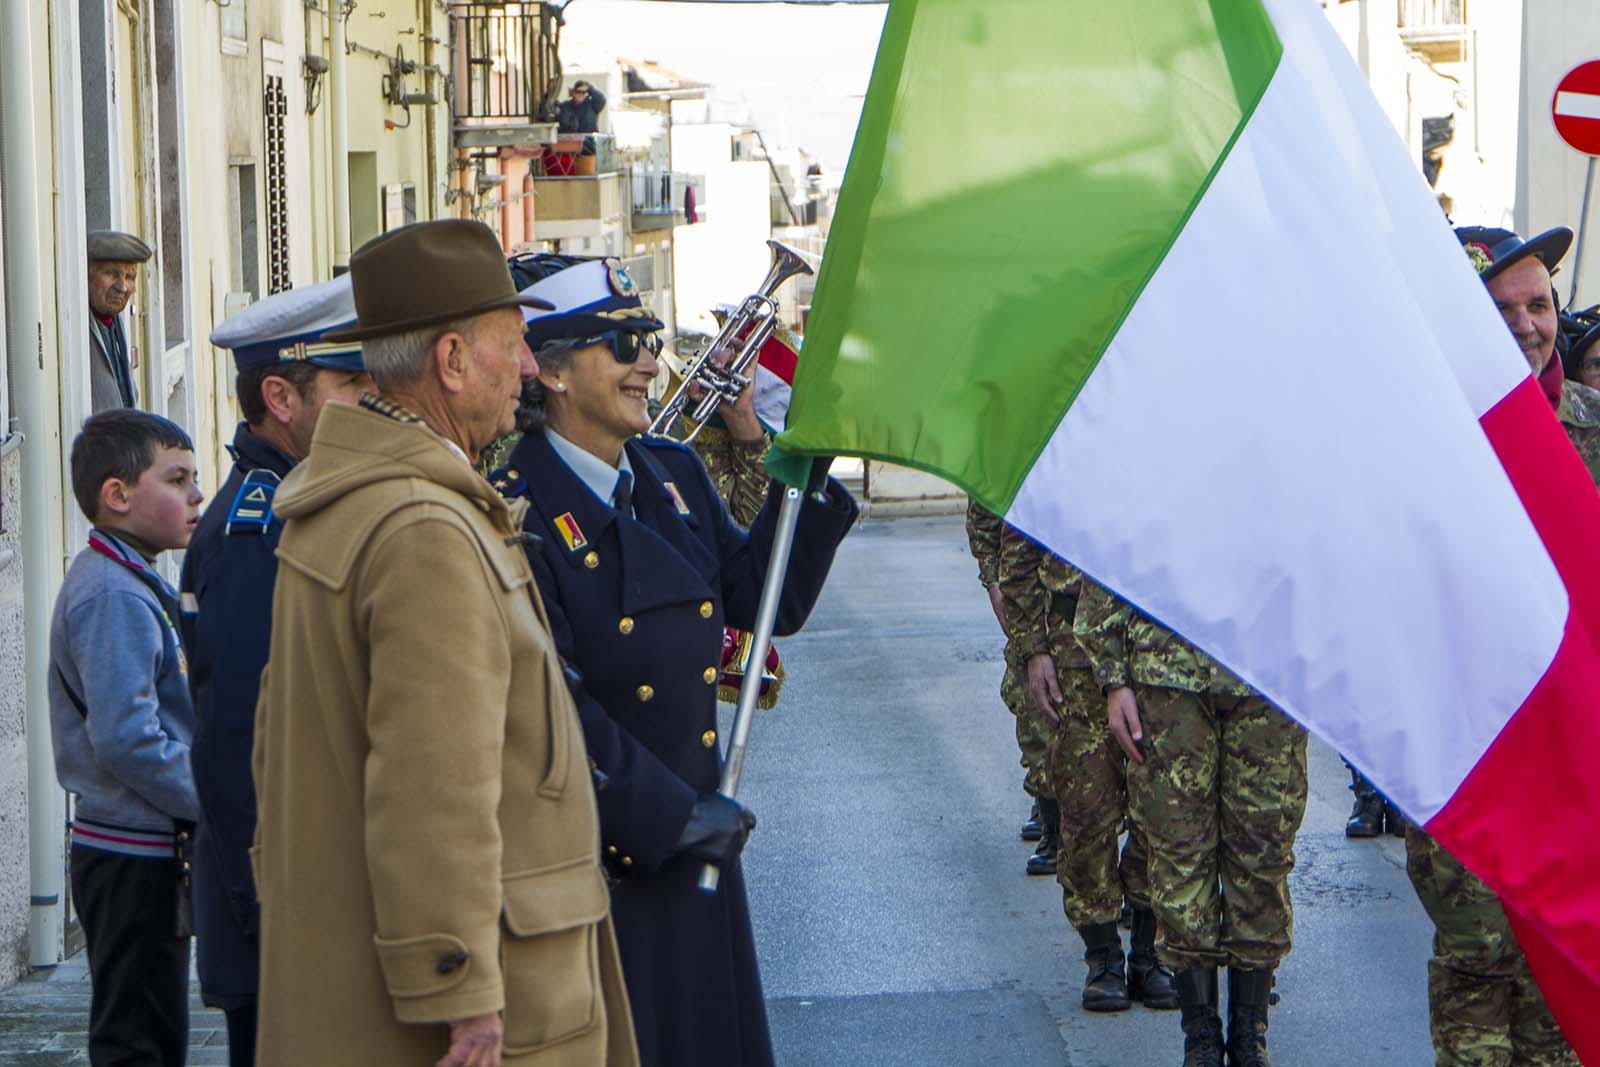  Giovanni Fiorilla dona le bandiere al comando dei vigili: il video